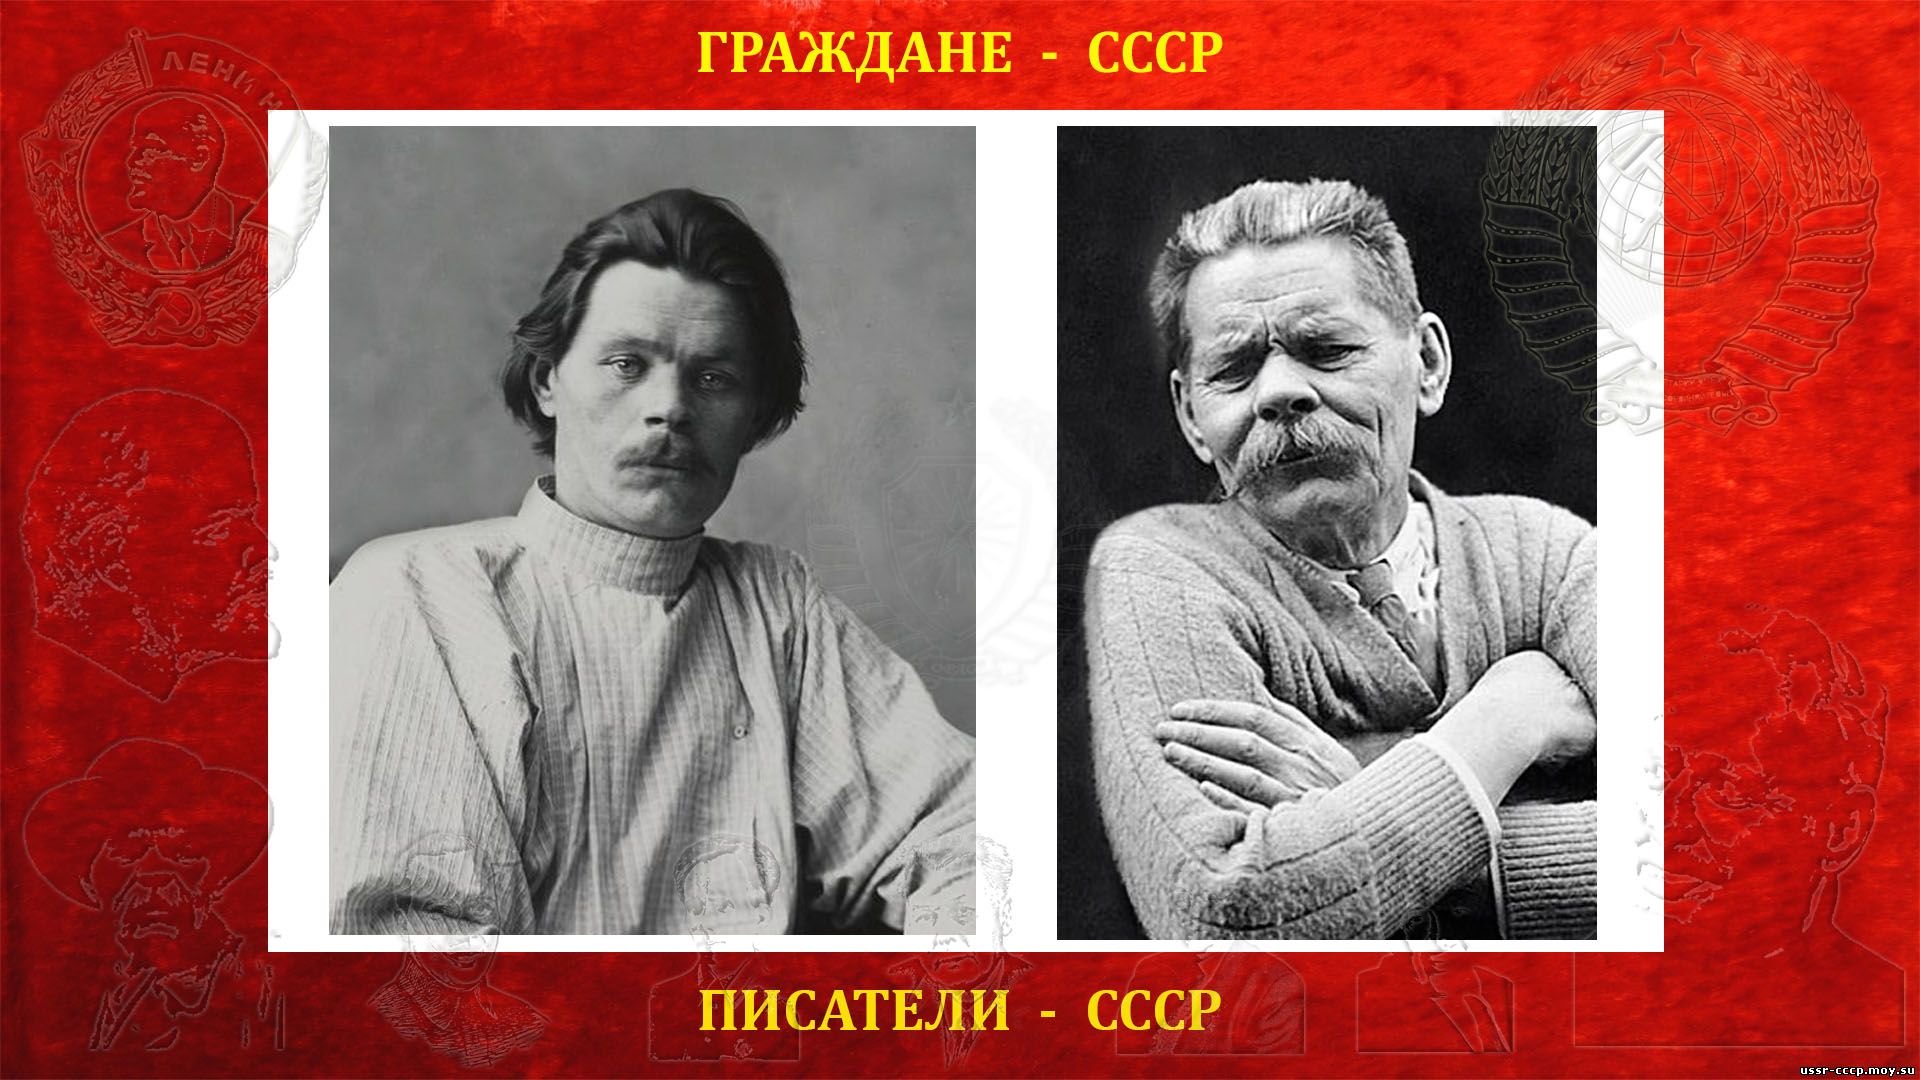 Известному русскому советскому писателю м горькому